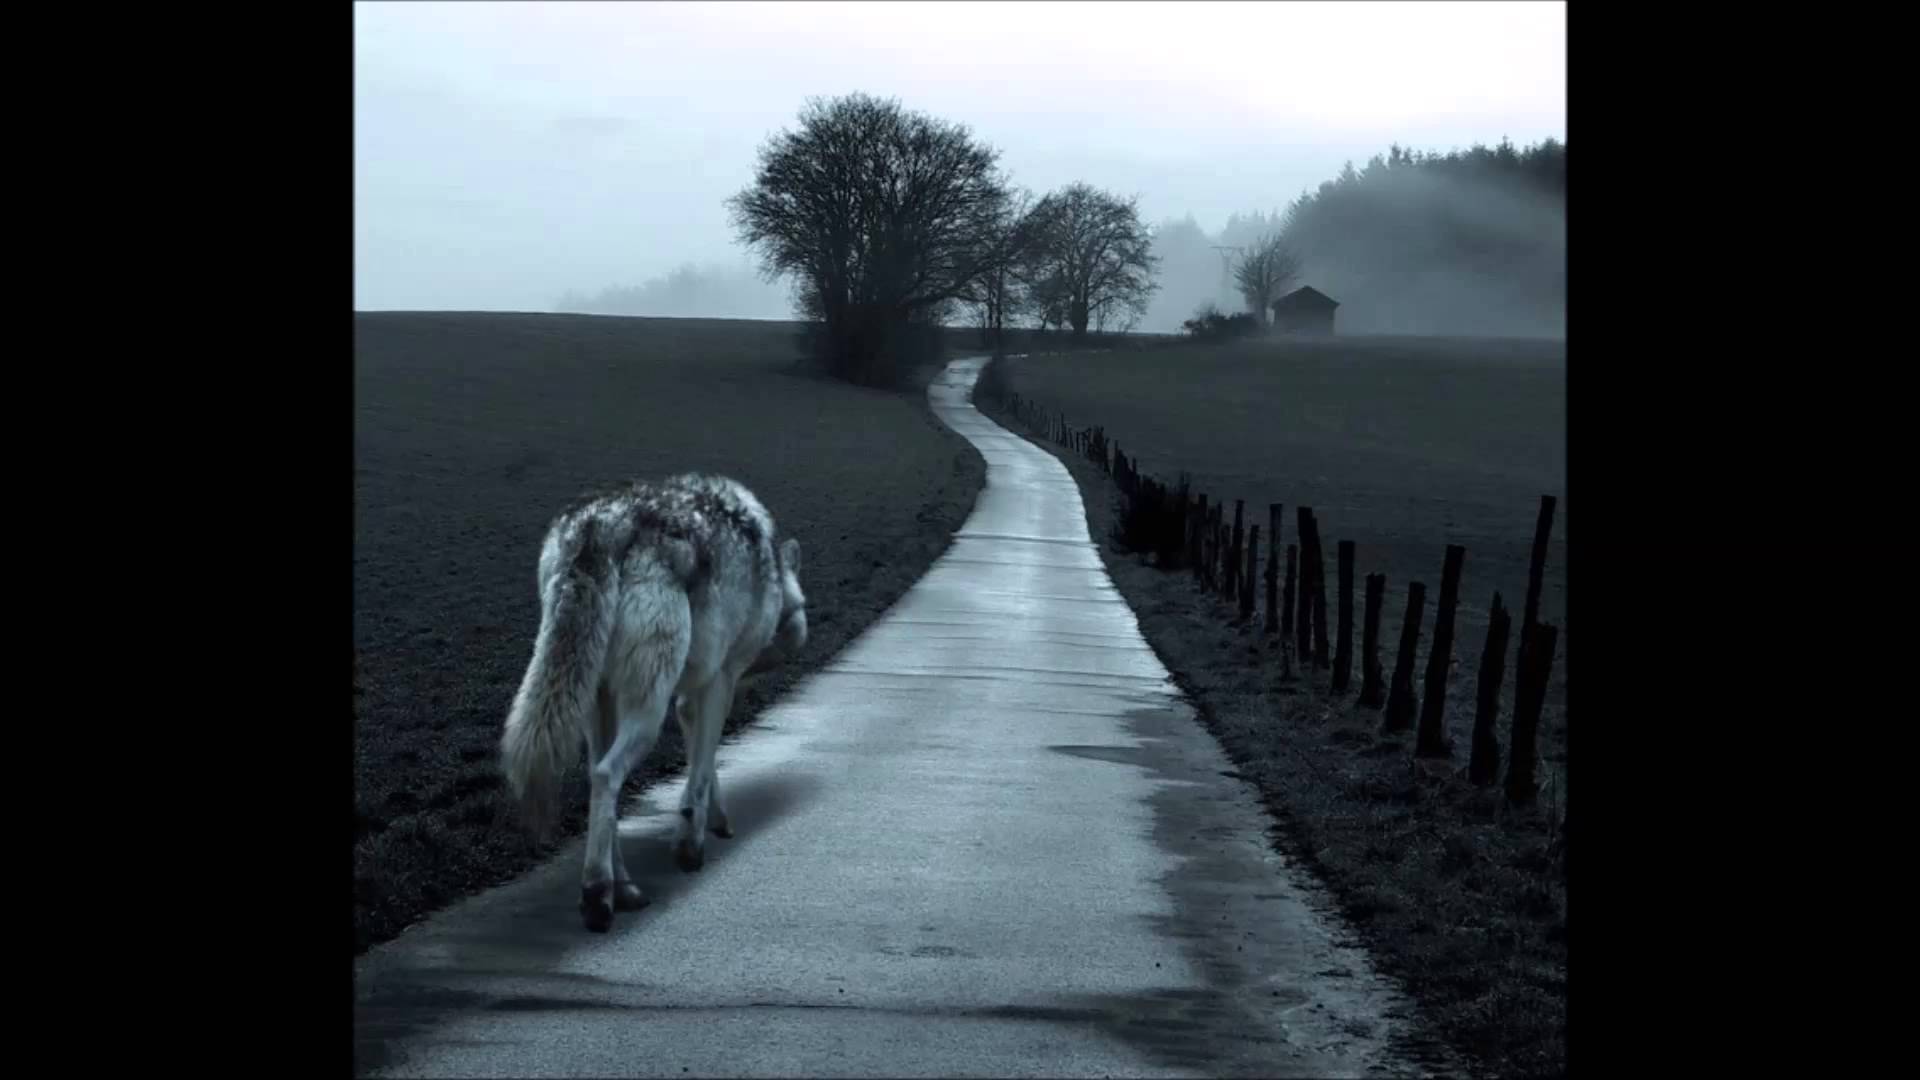 Видимо никуда. Волк уходит. Волк уходит в даль. Волк уходящий в даль. Волк идет по дороге.